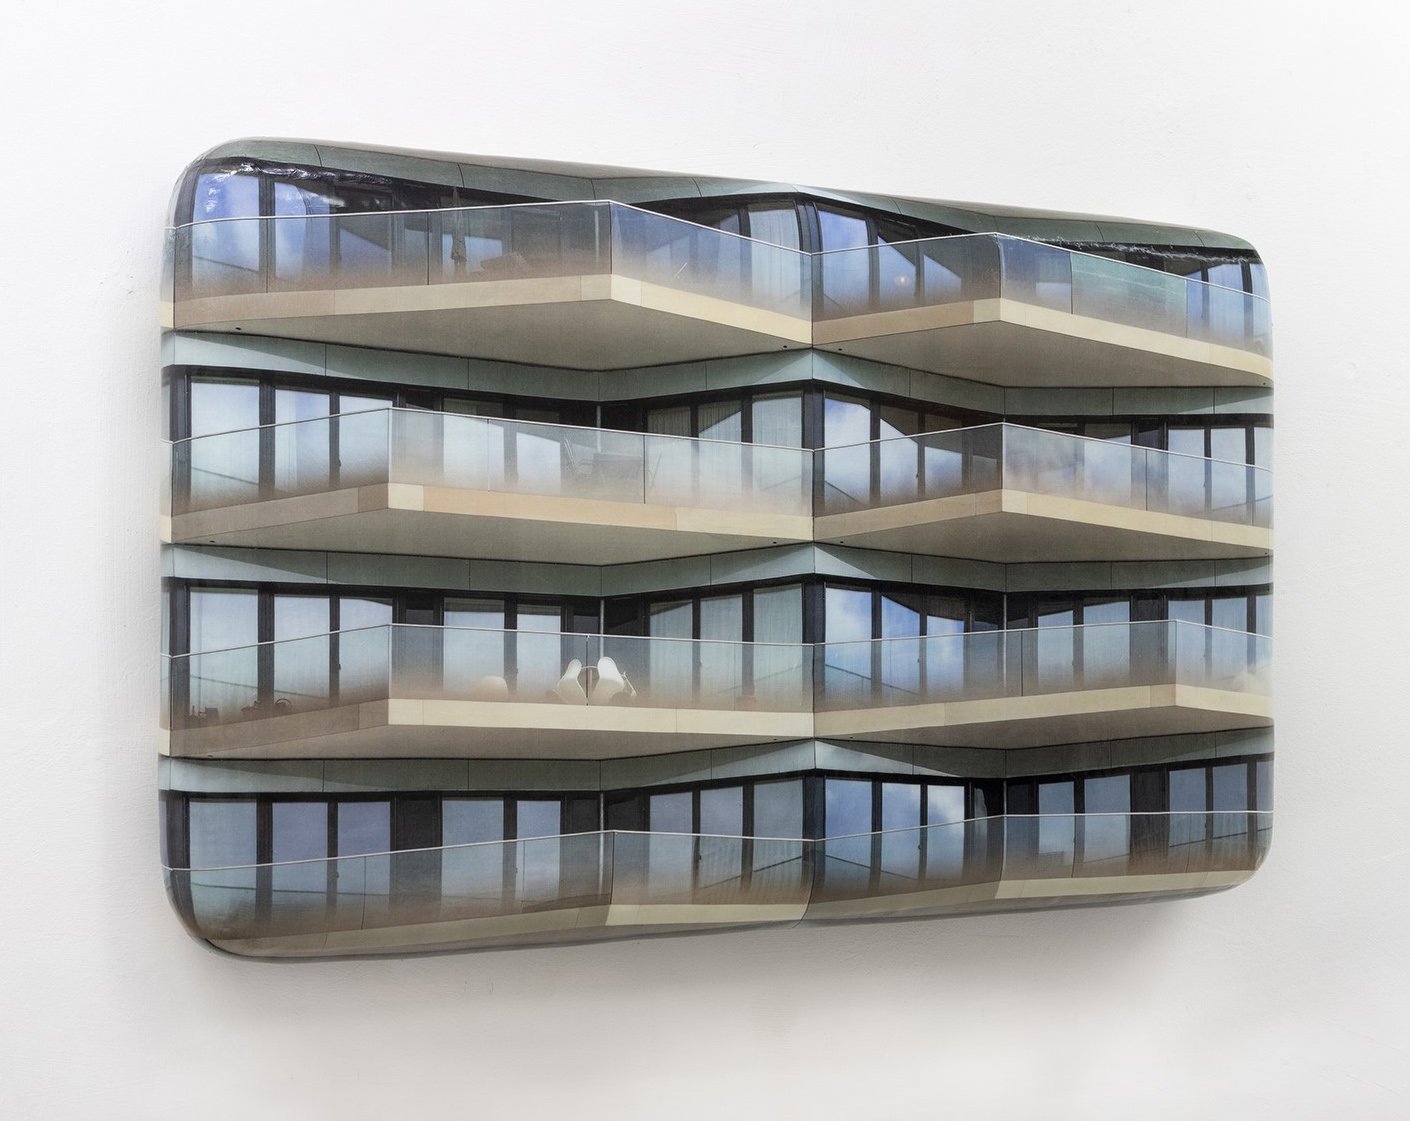  Wohnhaus 11, 2022, Holz, Schaumstoff, CLC-Print, Silikon, 48 x 81 x 9 cm 